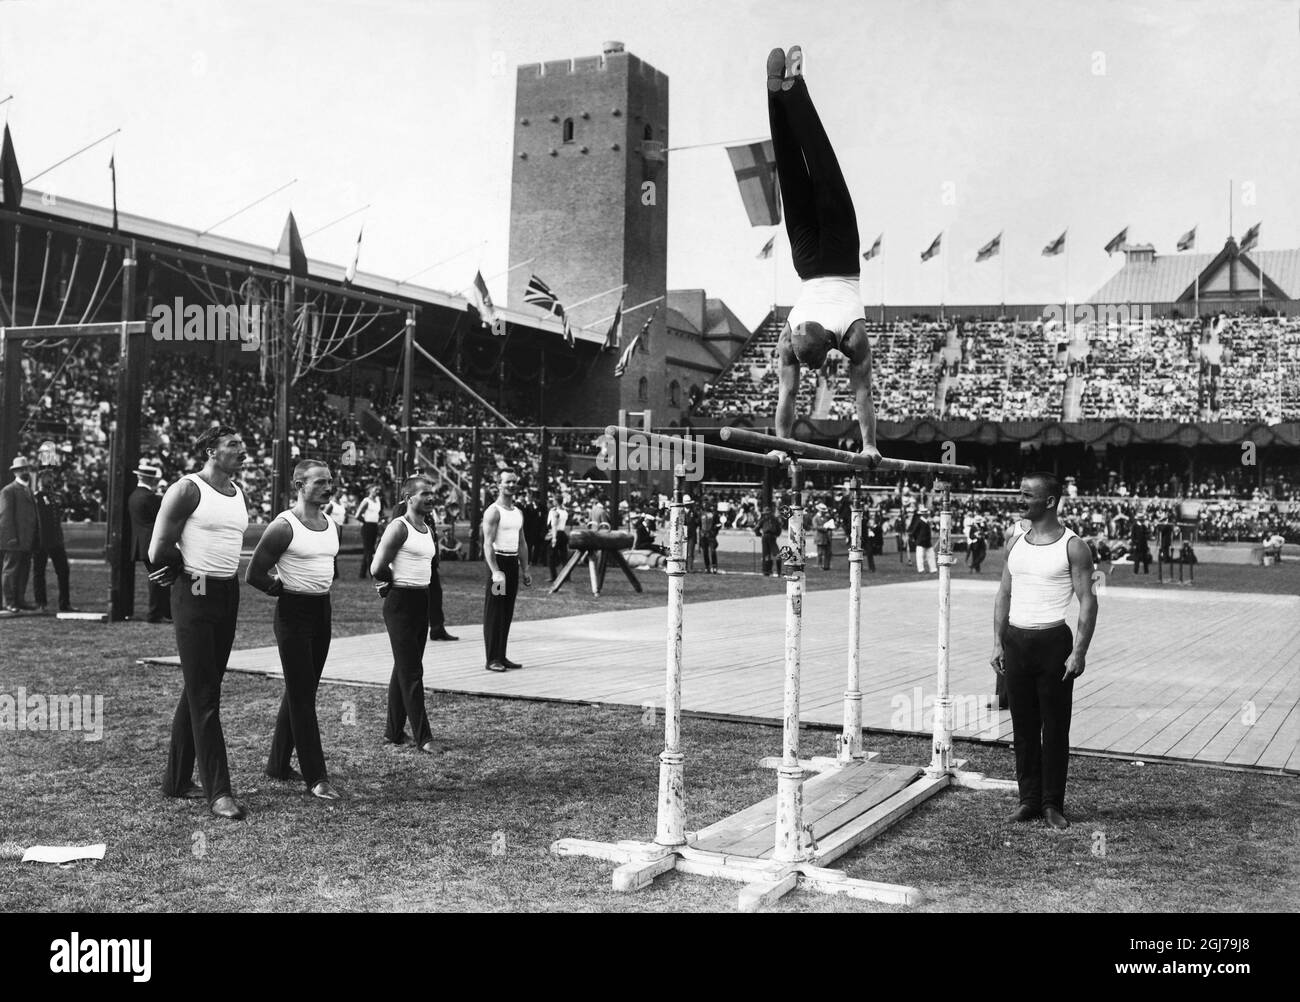 DOSSIER 1912 Concours de gymnastique aux bars pendant les Jeux Olympiques de Stockholm 1912. Foto:Scanpix Historique/ Kod:1900 Scanpix SUÈDE Banque D'Images